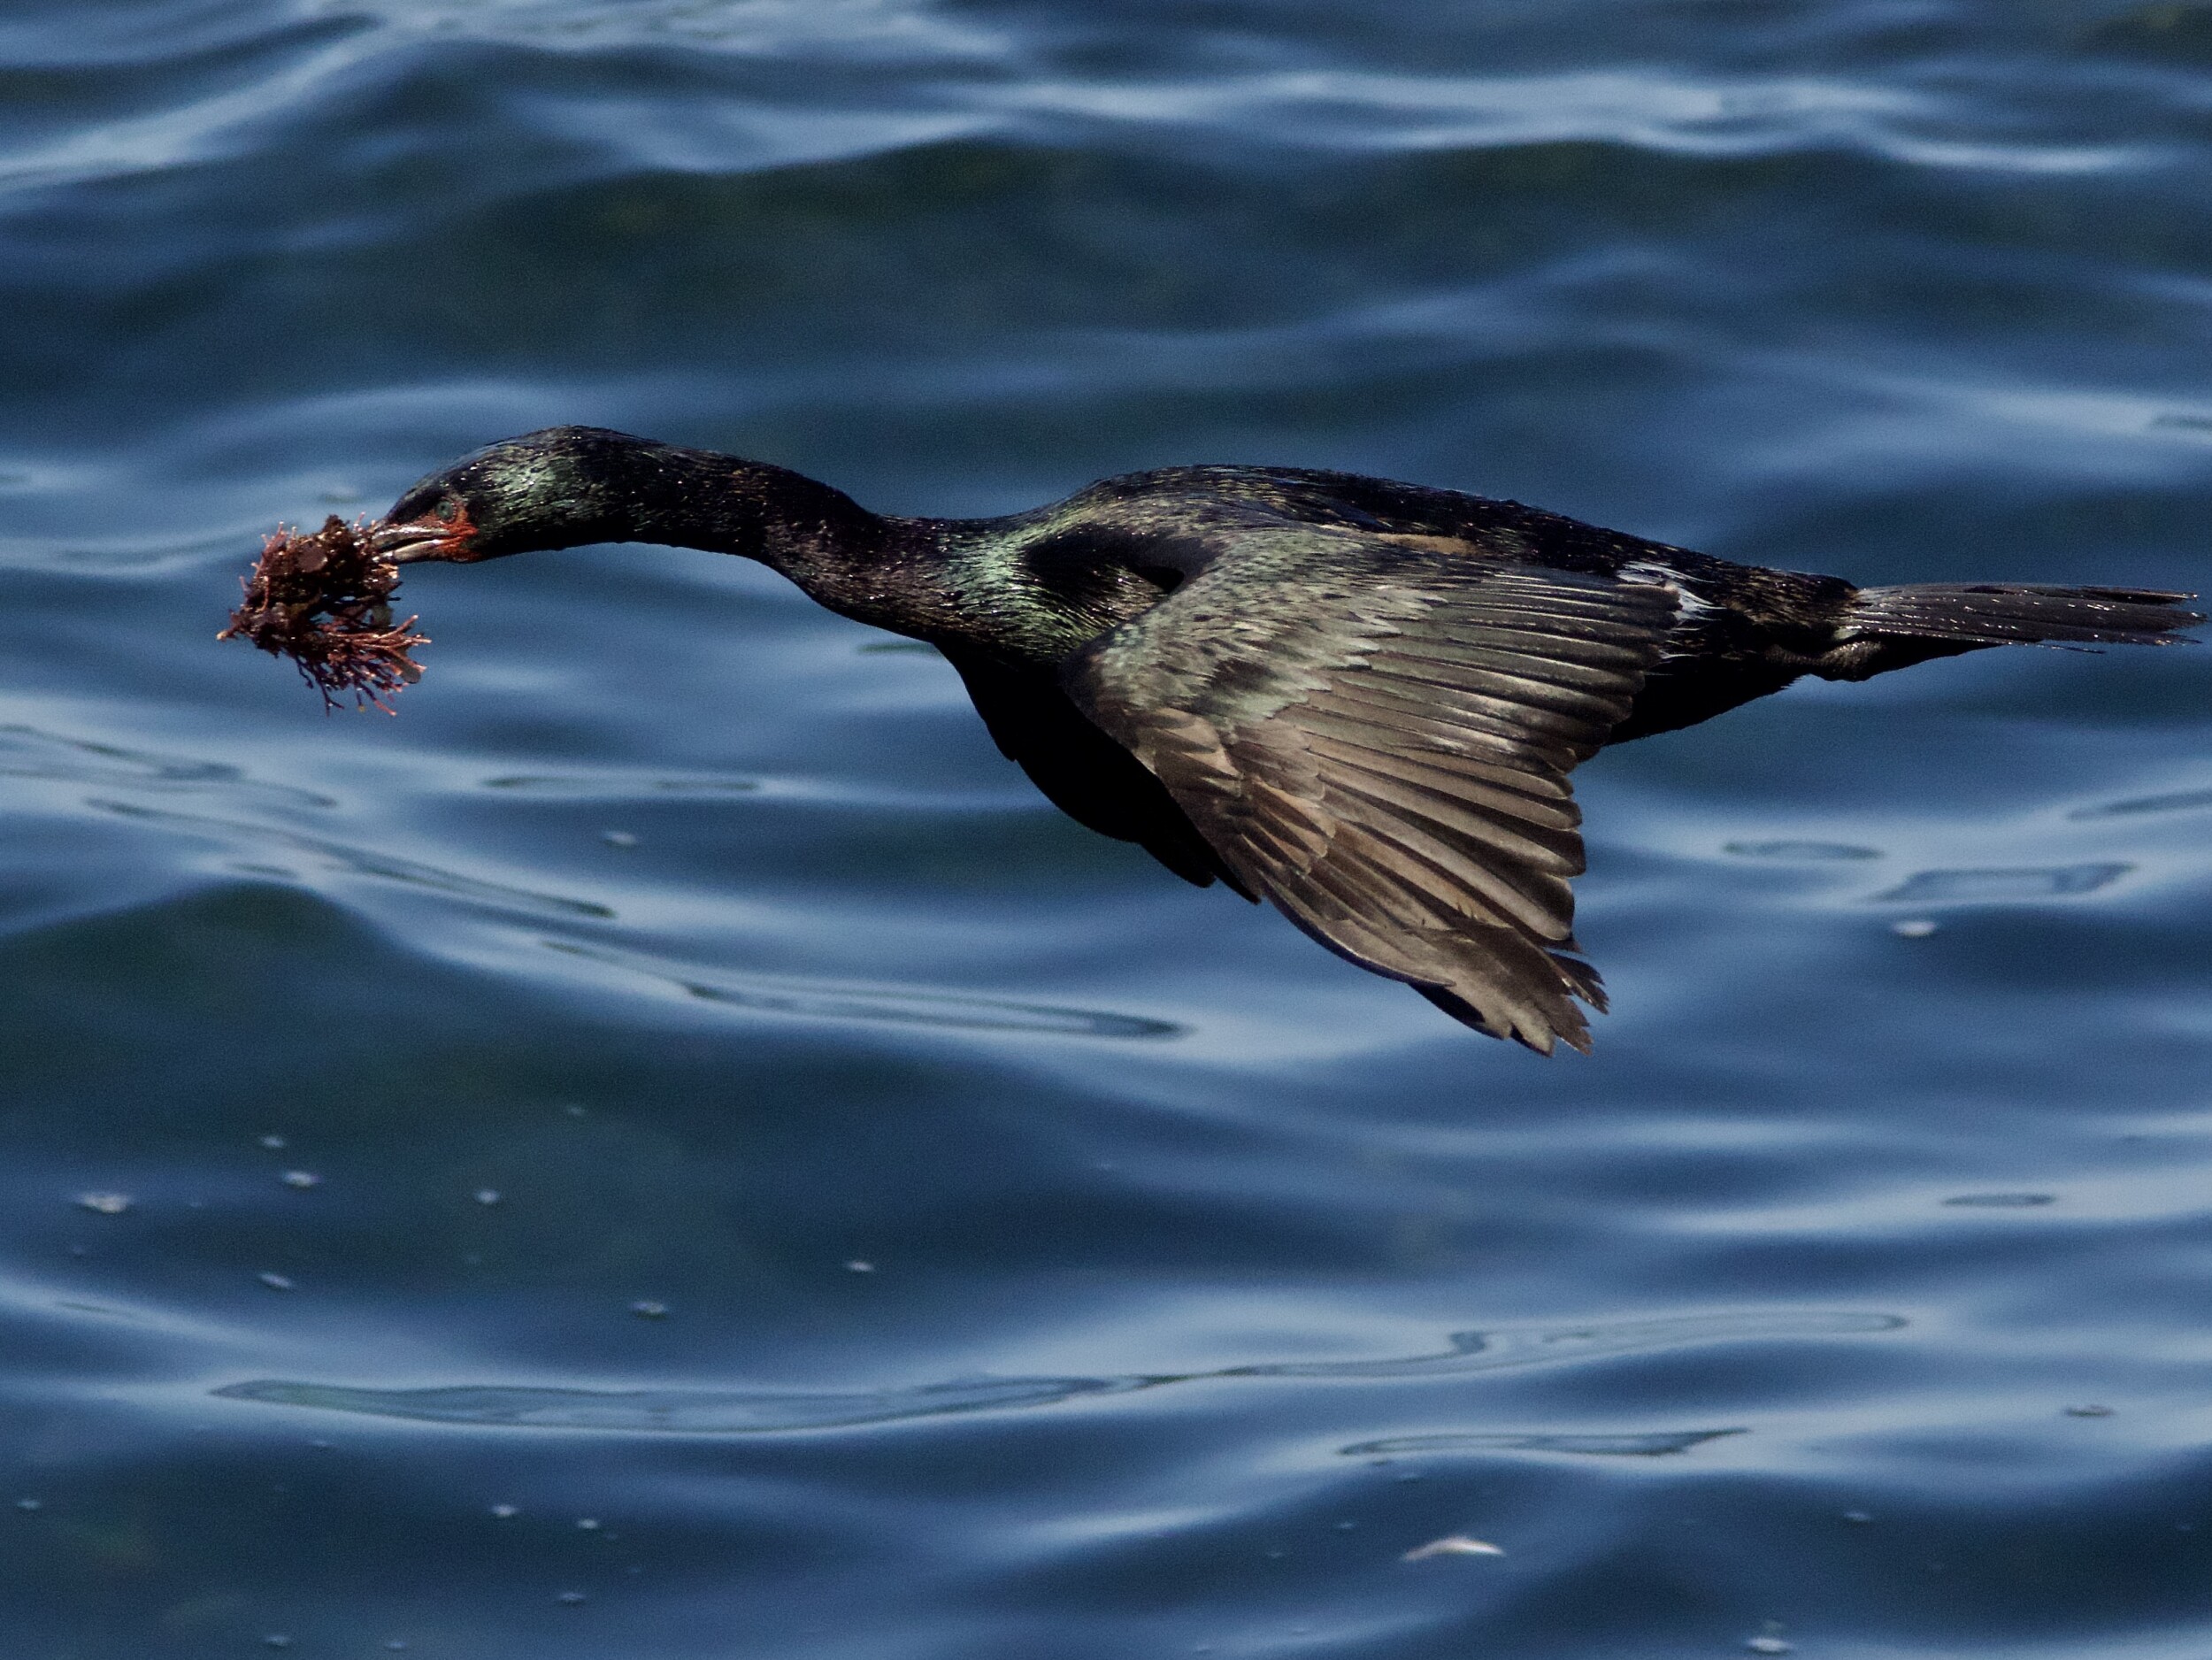 Pelagic Cormorant in Flight with Nesting Material